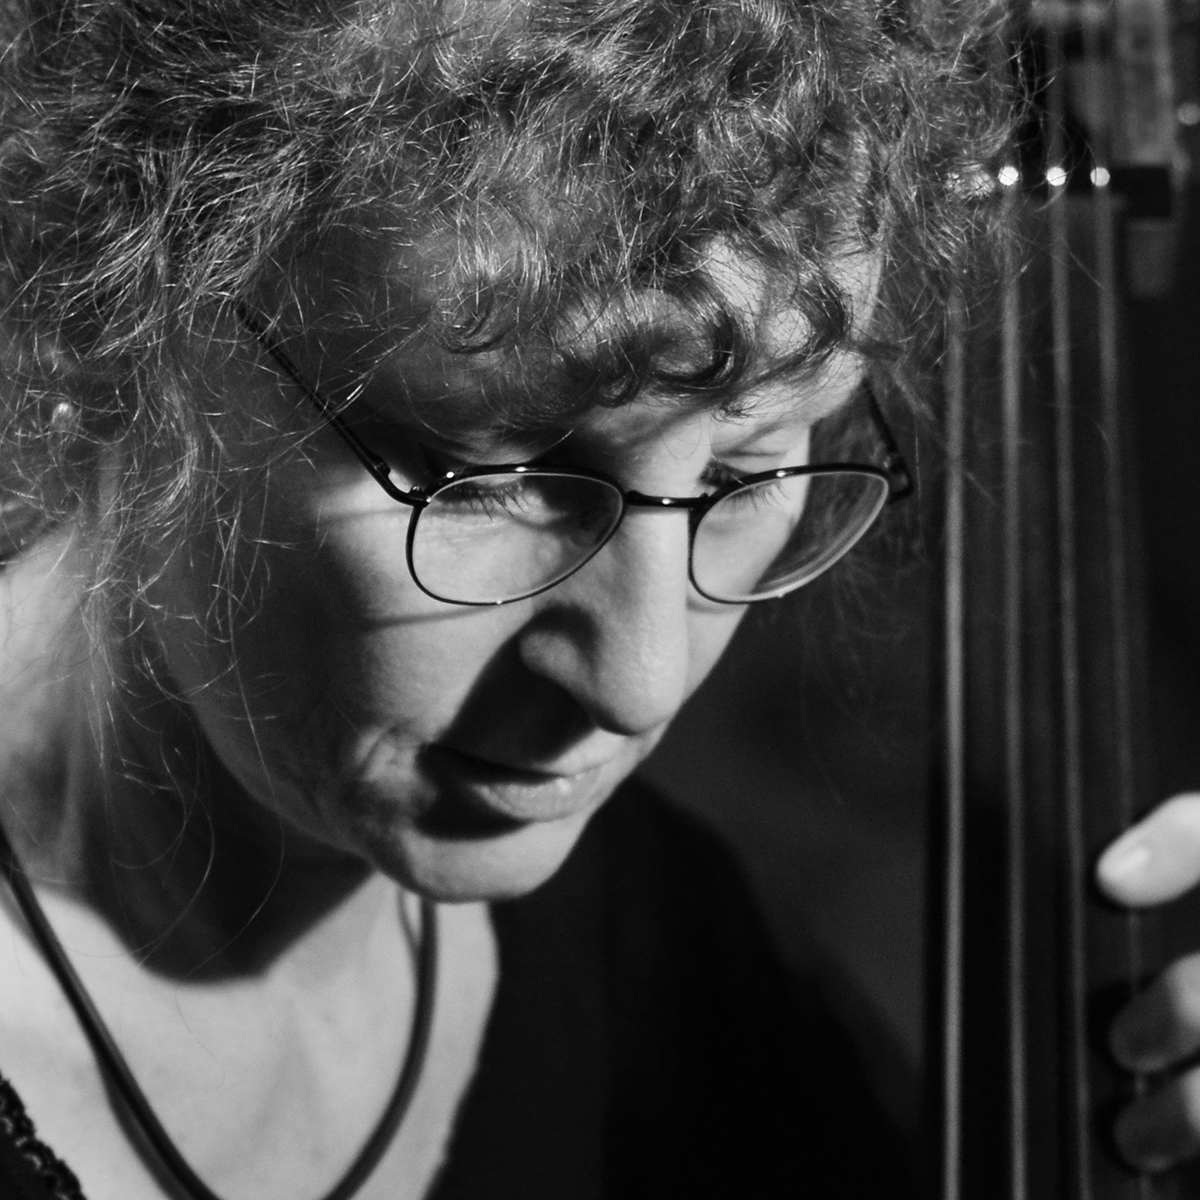 Sabine spielt Querflöten und Kontrabass. Seit ihrem Studium an der Hochschule für Musik und Darstellende Kunst in Frankfurt mit dem Hauptfach Querflöte arbeitet sie als freischaffende Musikerin.